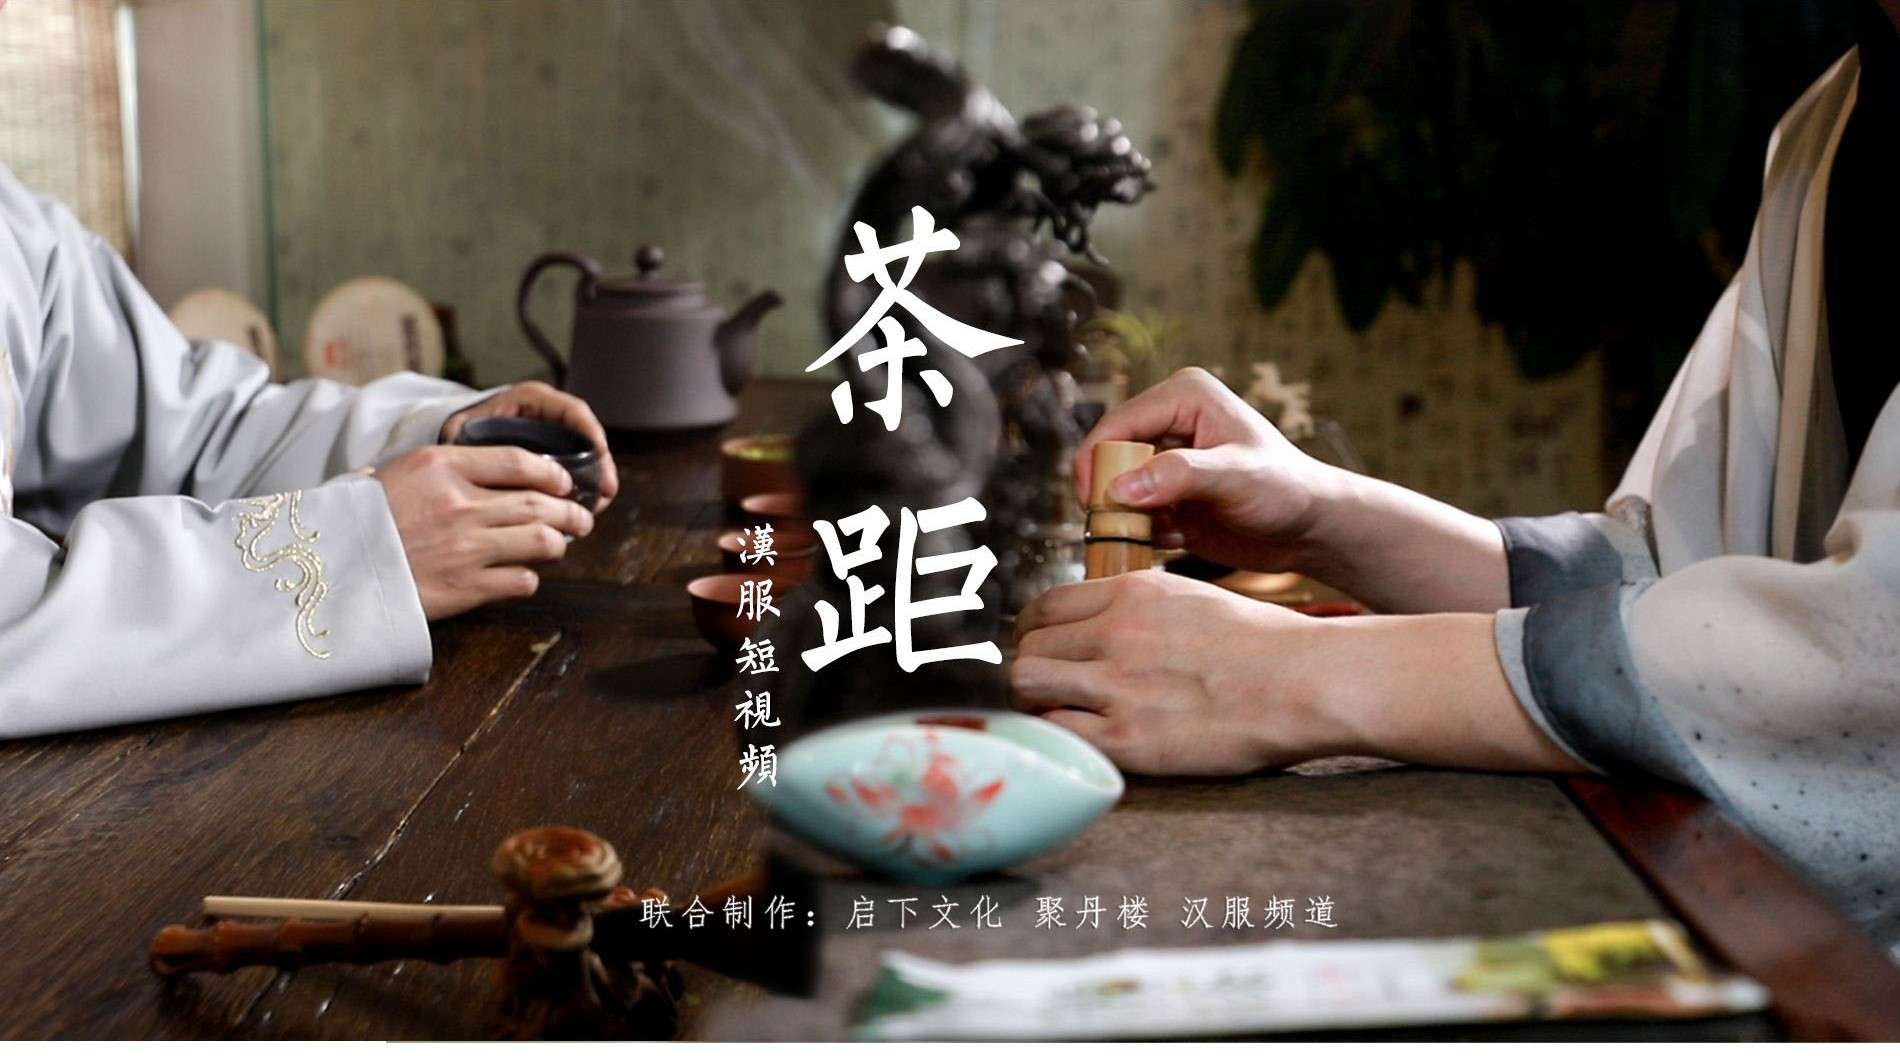 汉服短片 《茶距》—— 茶间之距，人间之隔。邀你共饮一杯茶！